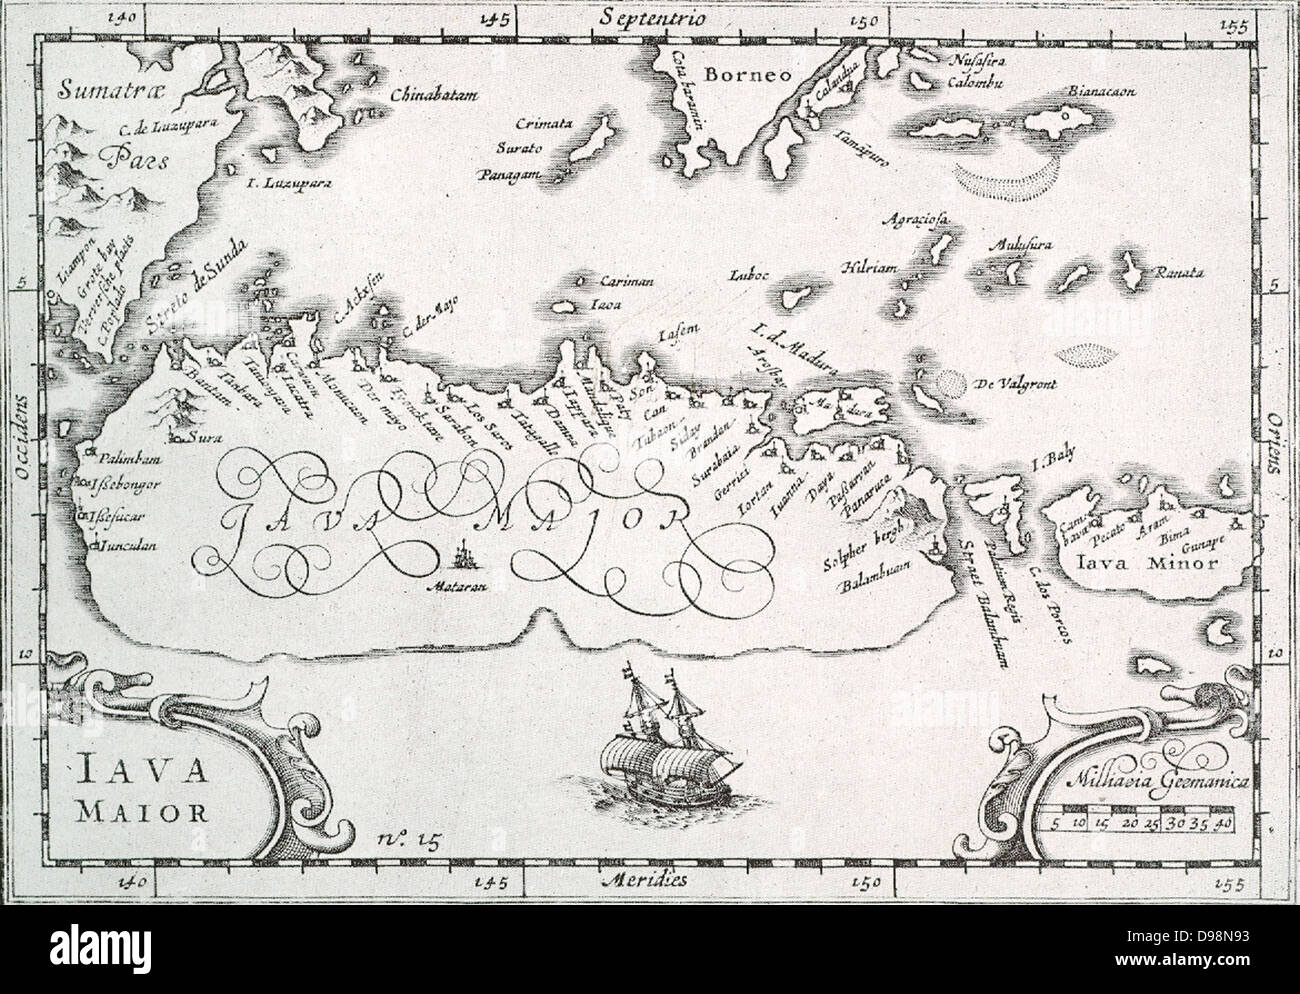 Karte von der Insel Java nach Bali und Lombok, wie die Holländer, die als Erste die indonesischen Archipel besucht, das wusste er. Die Kunst des Java war noch ziemlich unbekannt und wird nur sketchily angezeigt. Vom Journal der Houtman genommen (1595). Stockfoto